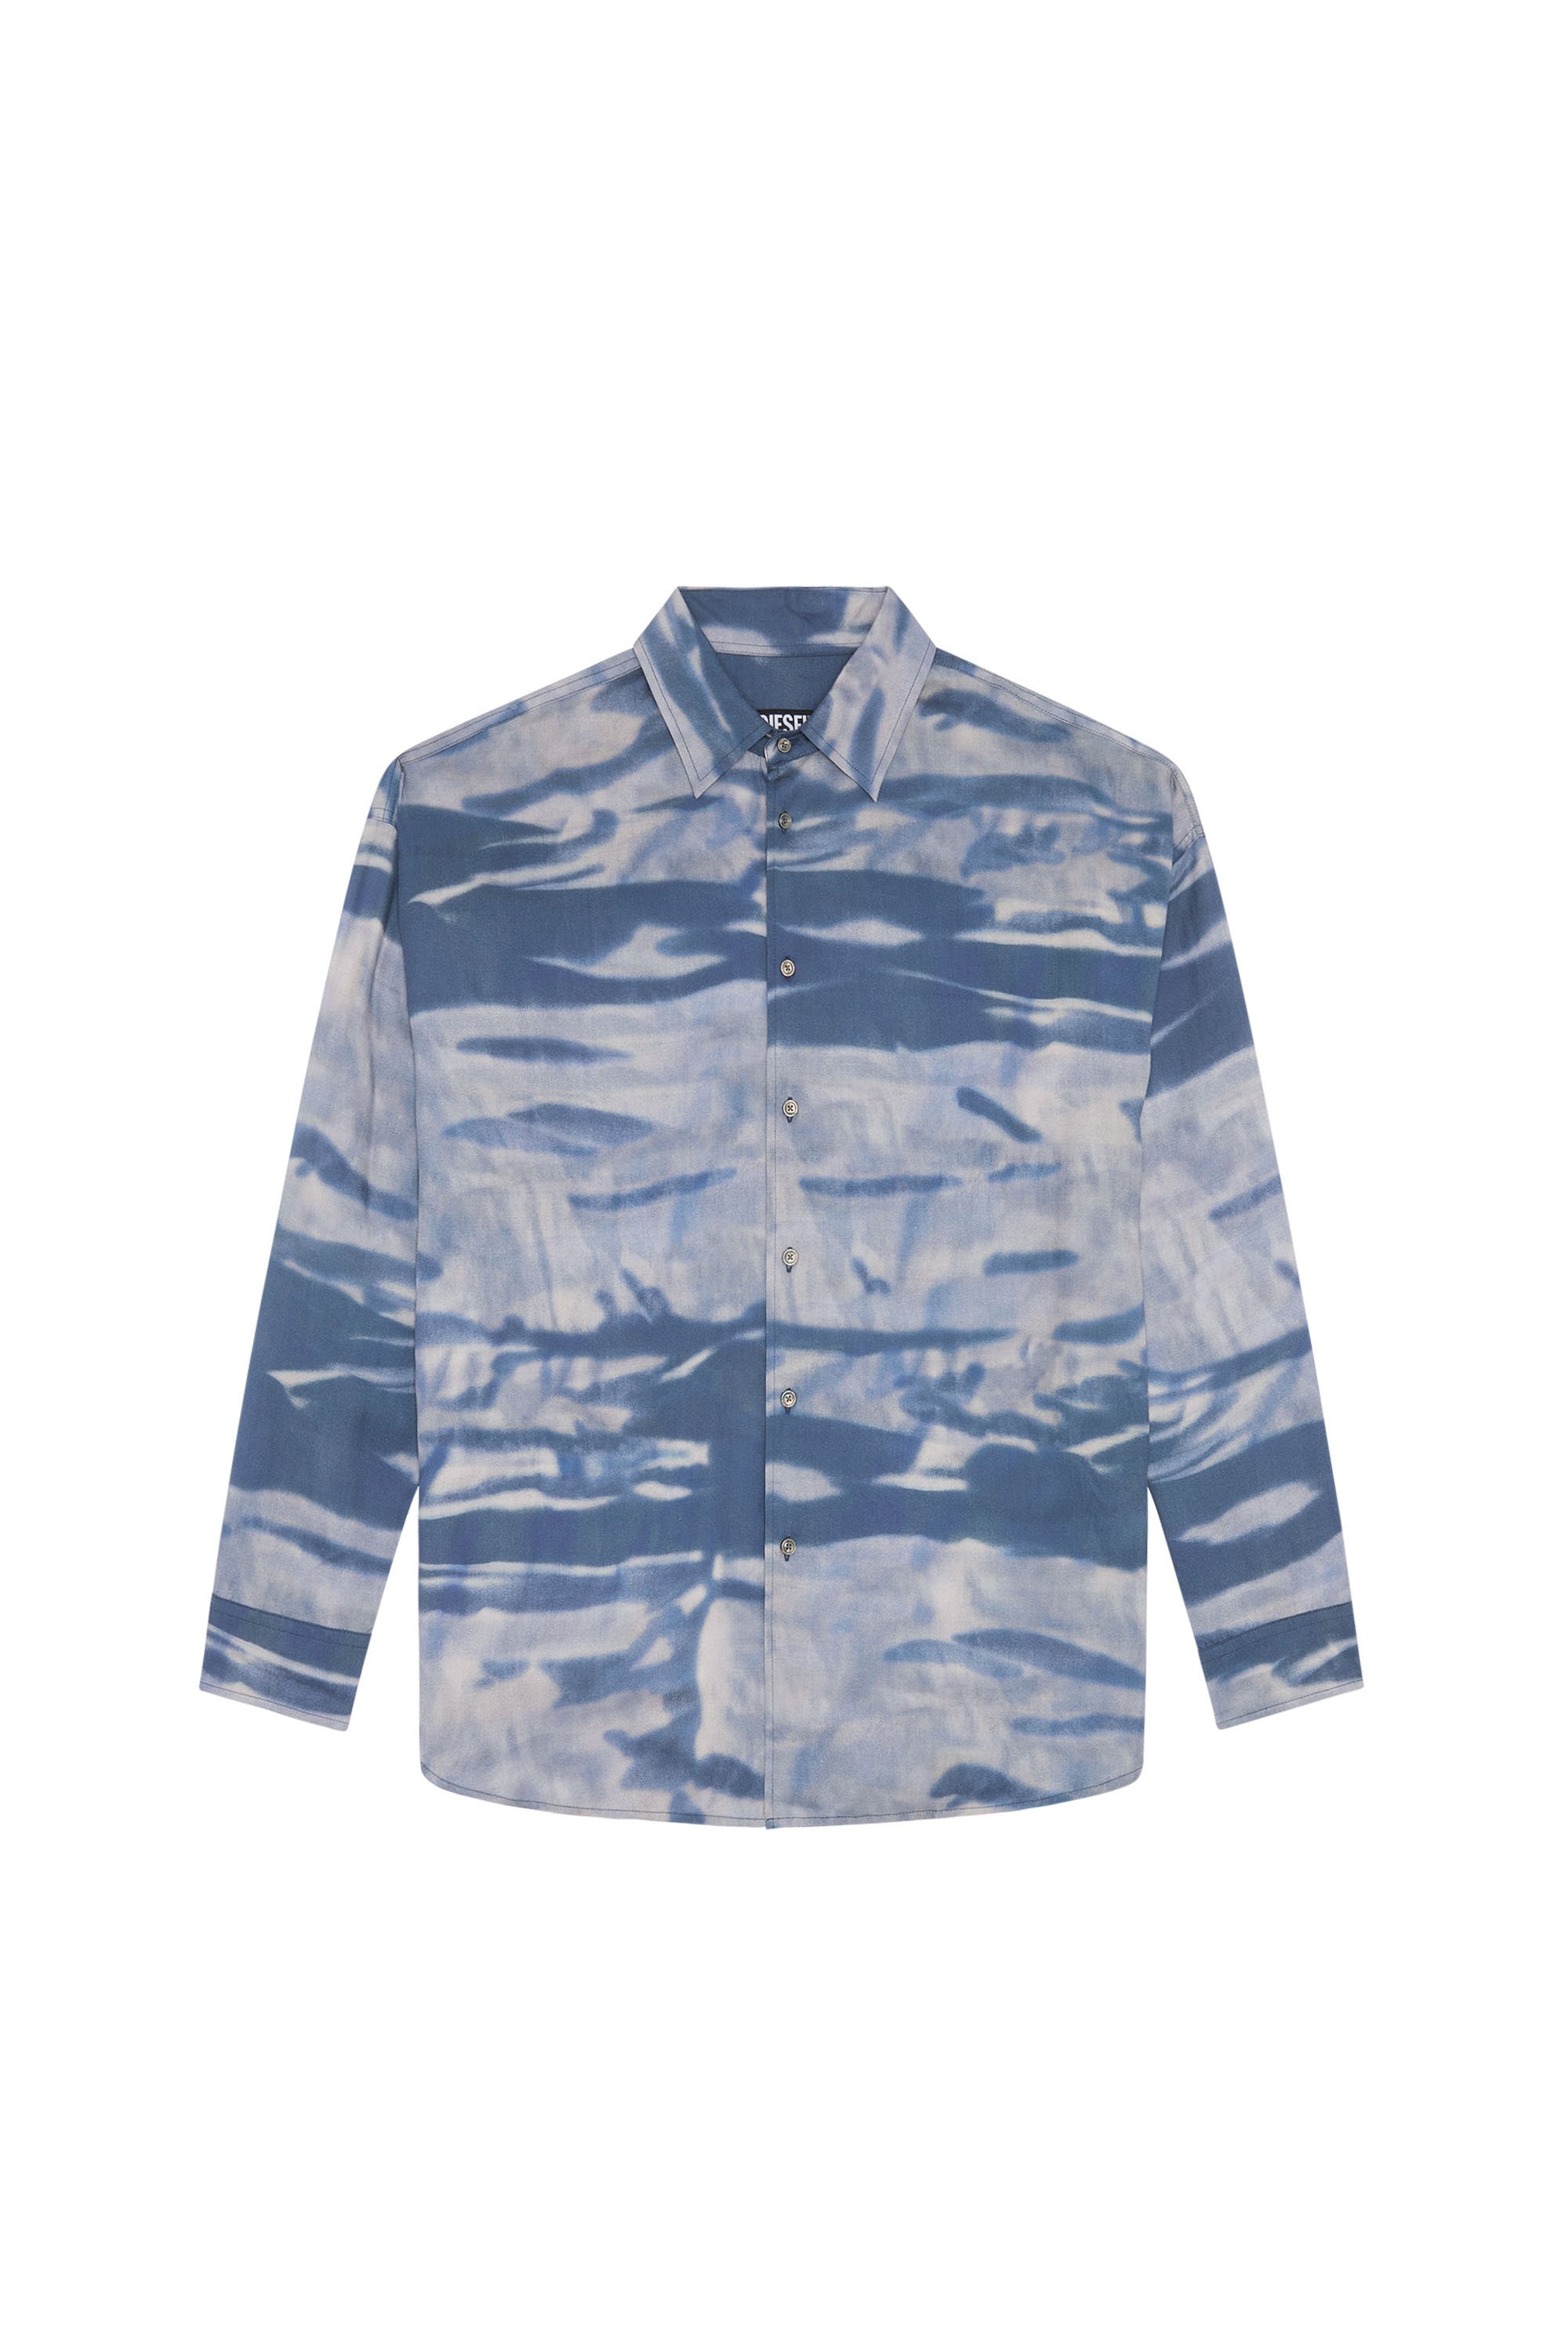 S-FLUID-CMF, Grey/Blue - Shirts